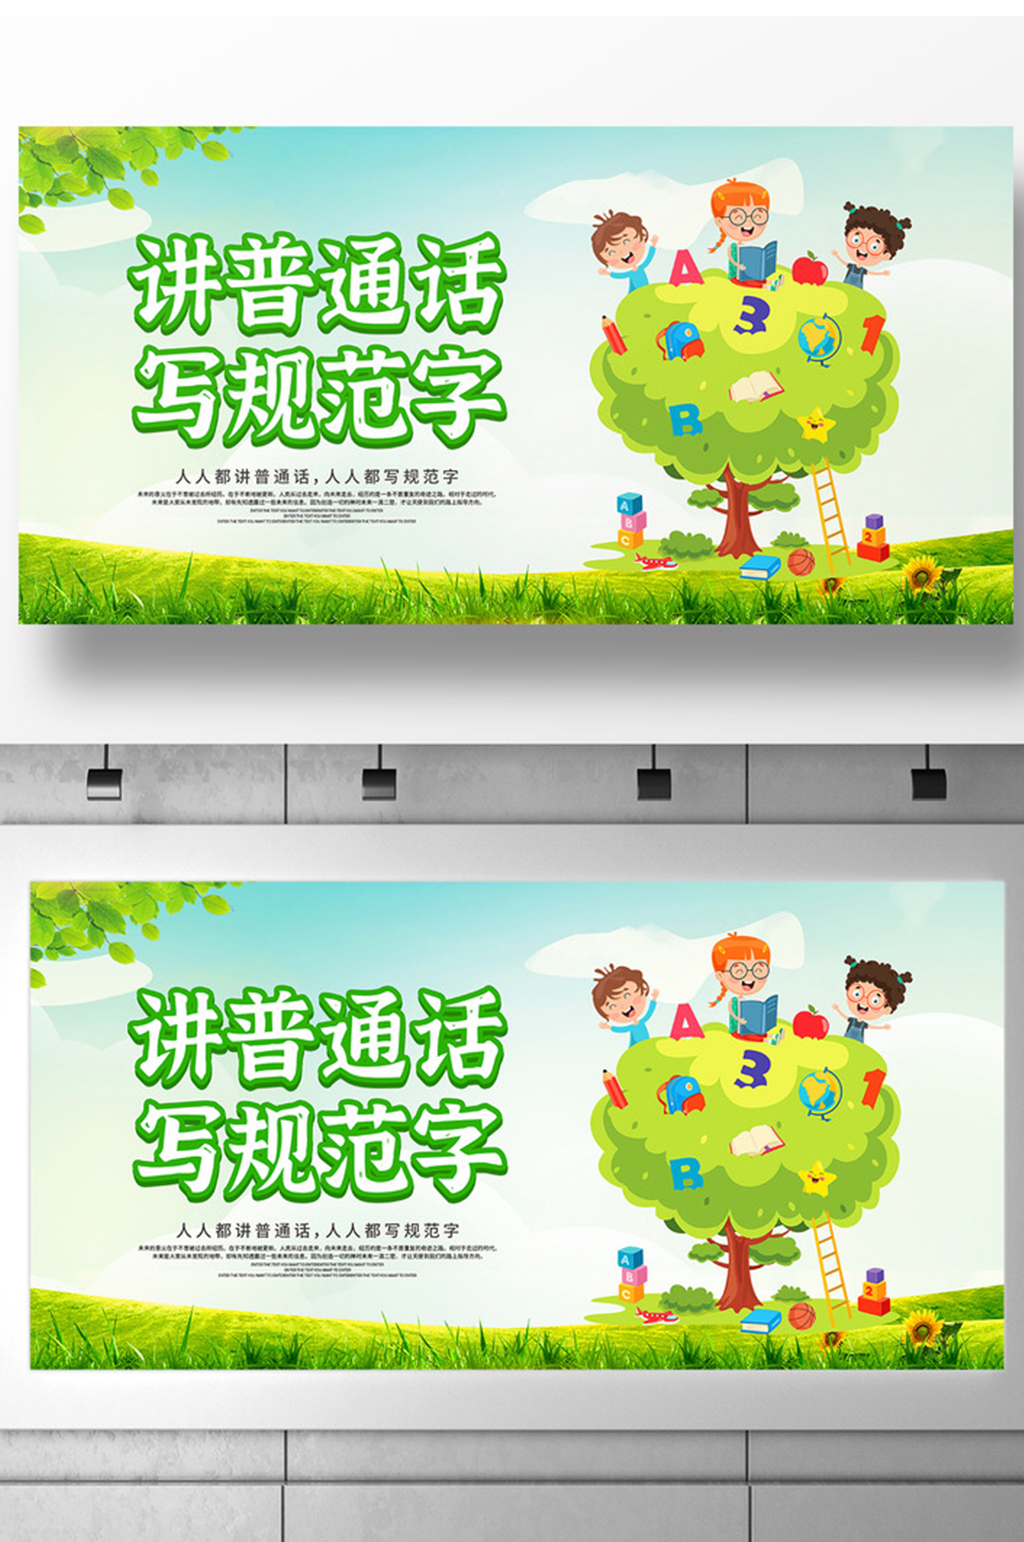 卡通插画推广普通话宣传周宣传展板